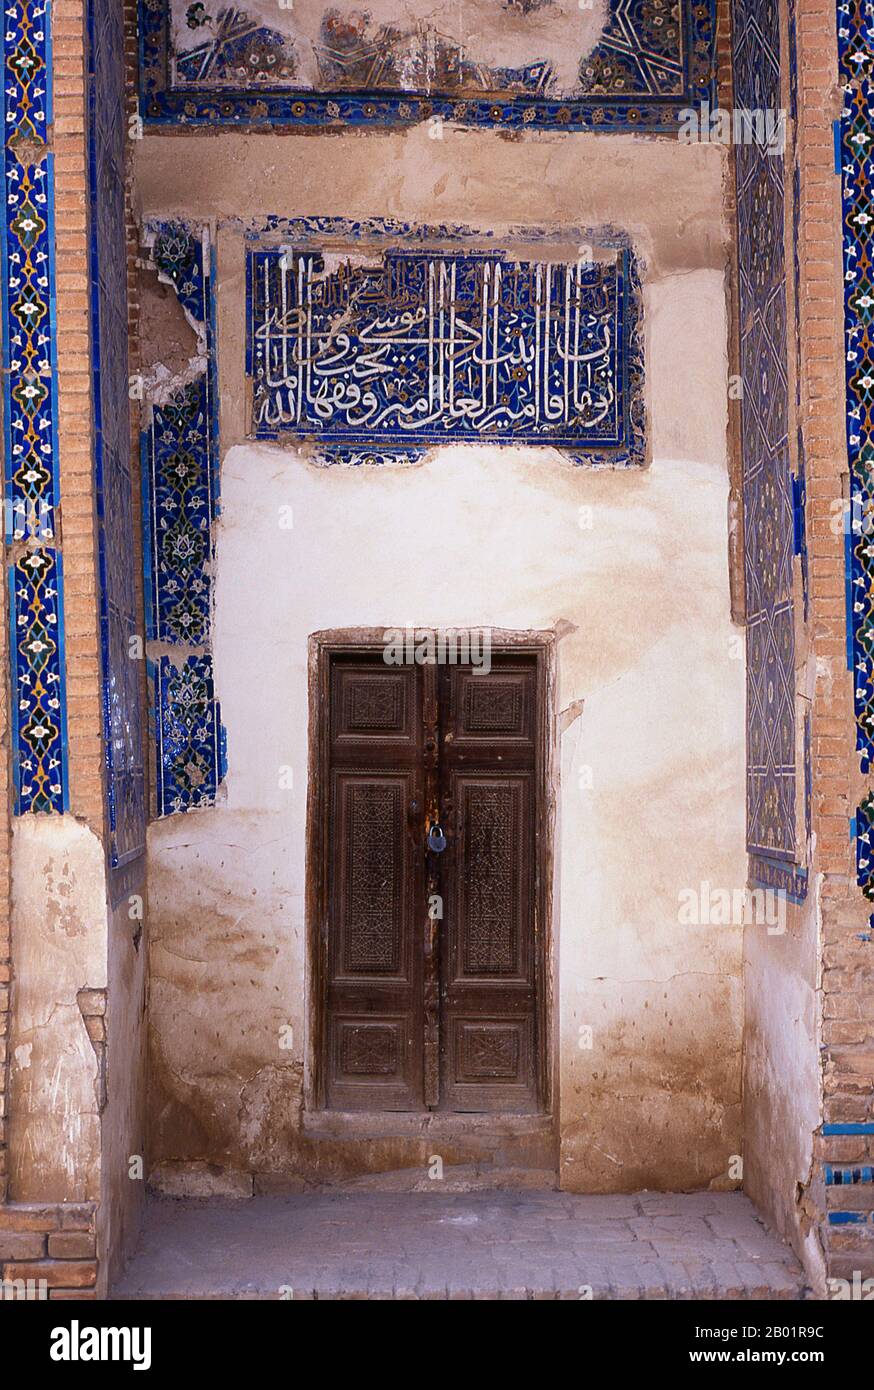 Usbekistan: Eingang in Shah-i-Zinda, Samarkand. Shah-i-Zinda („der lebende König“) ist eine Nekropole im nordöstlichen Teil von Samarkand. Das Shah-i-Zinda Ensemble umfasst Mausoleen und andere rituelle Gebäude aus dem 9.-14. Und 19. Jahrhundert. Der Name Shah-i-Zinda steht im Zusammenhang mit der Legende, dass Kusam ibn Abbas, ein Cousin des Propheten Muhammad, hier begraben ist. Es wird angenommen, dass er mit der arabischen Invasion im 7. Jahrhundert nach Samarkand kam, um den Islam zu predigen. Populäre Legenden sagen, dass er von zoroastrischen Feueranbetern wegen seines Glaubens enthauptet wurde. Stockfoto